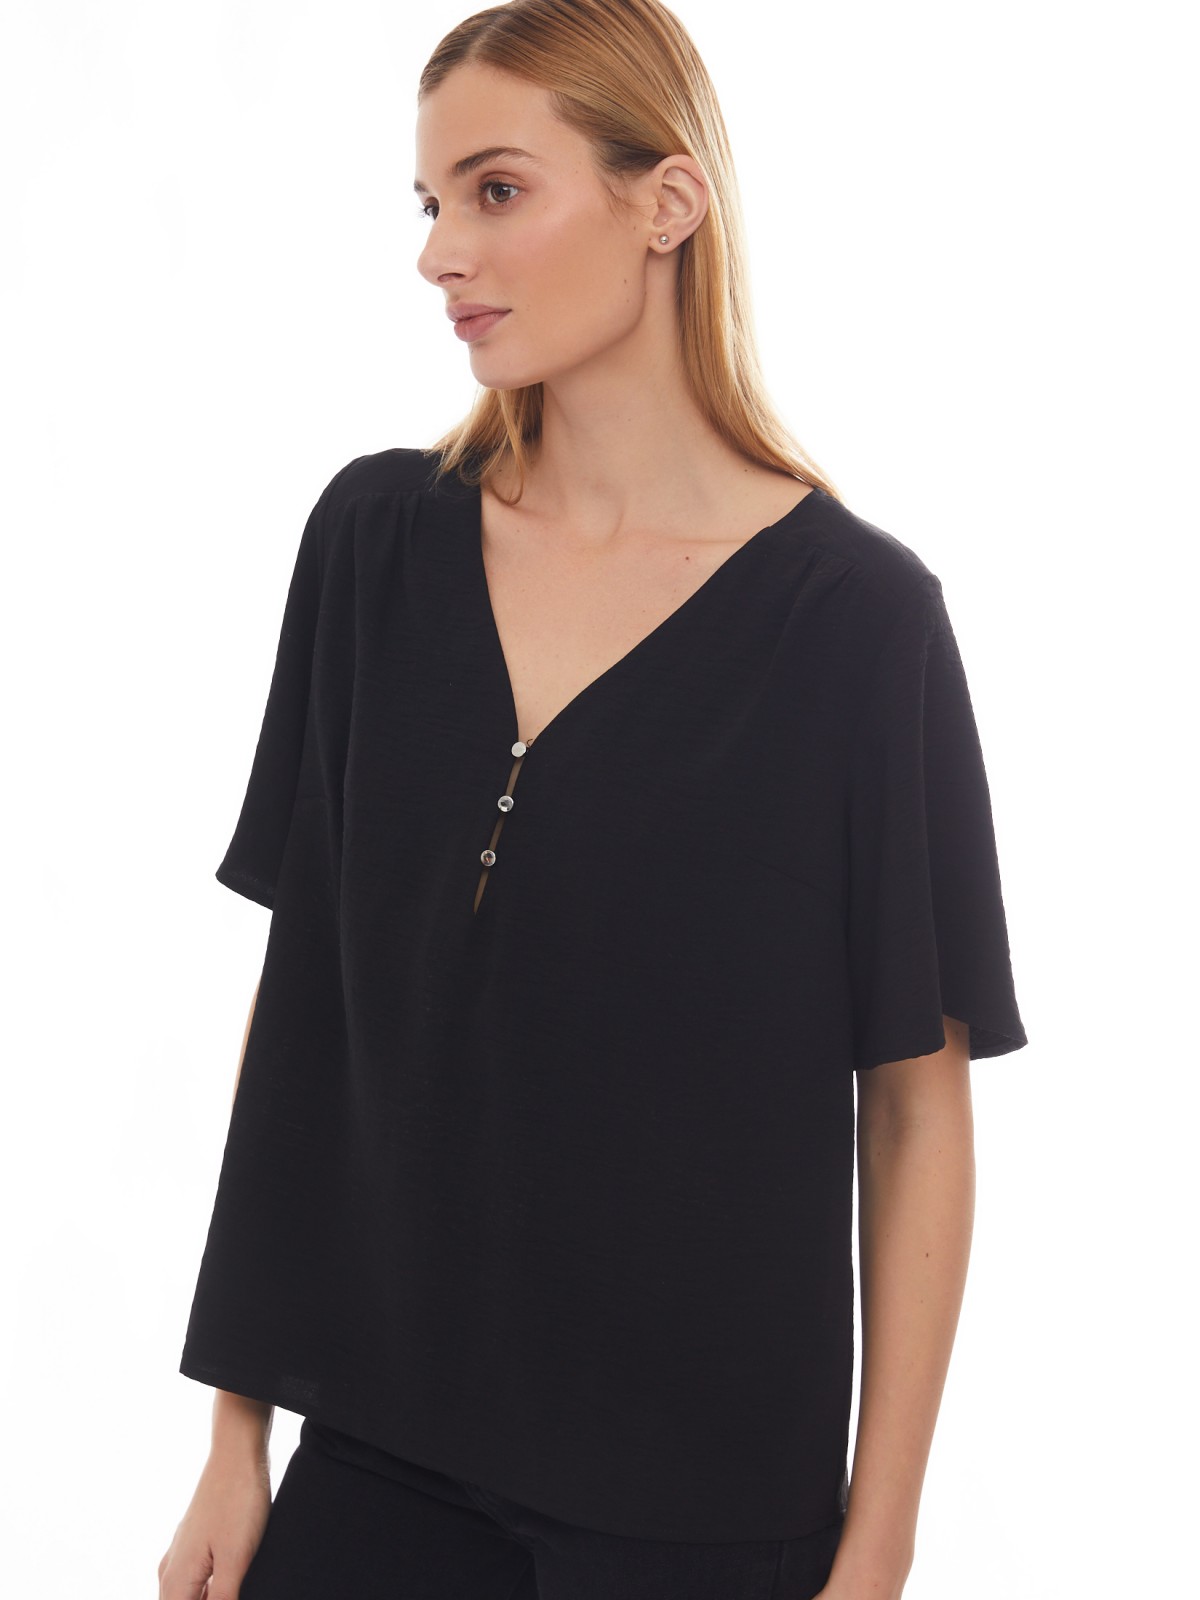 Блузка с вырезом и коротким рукавом zolla 02413127Y173, цвет черный, размер S